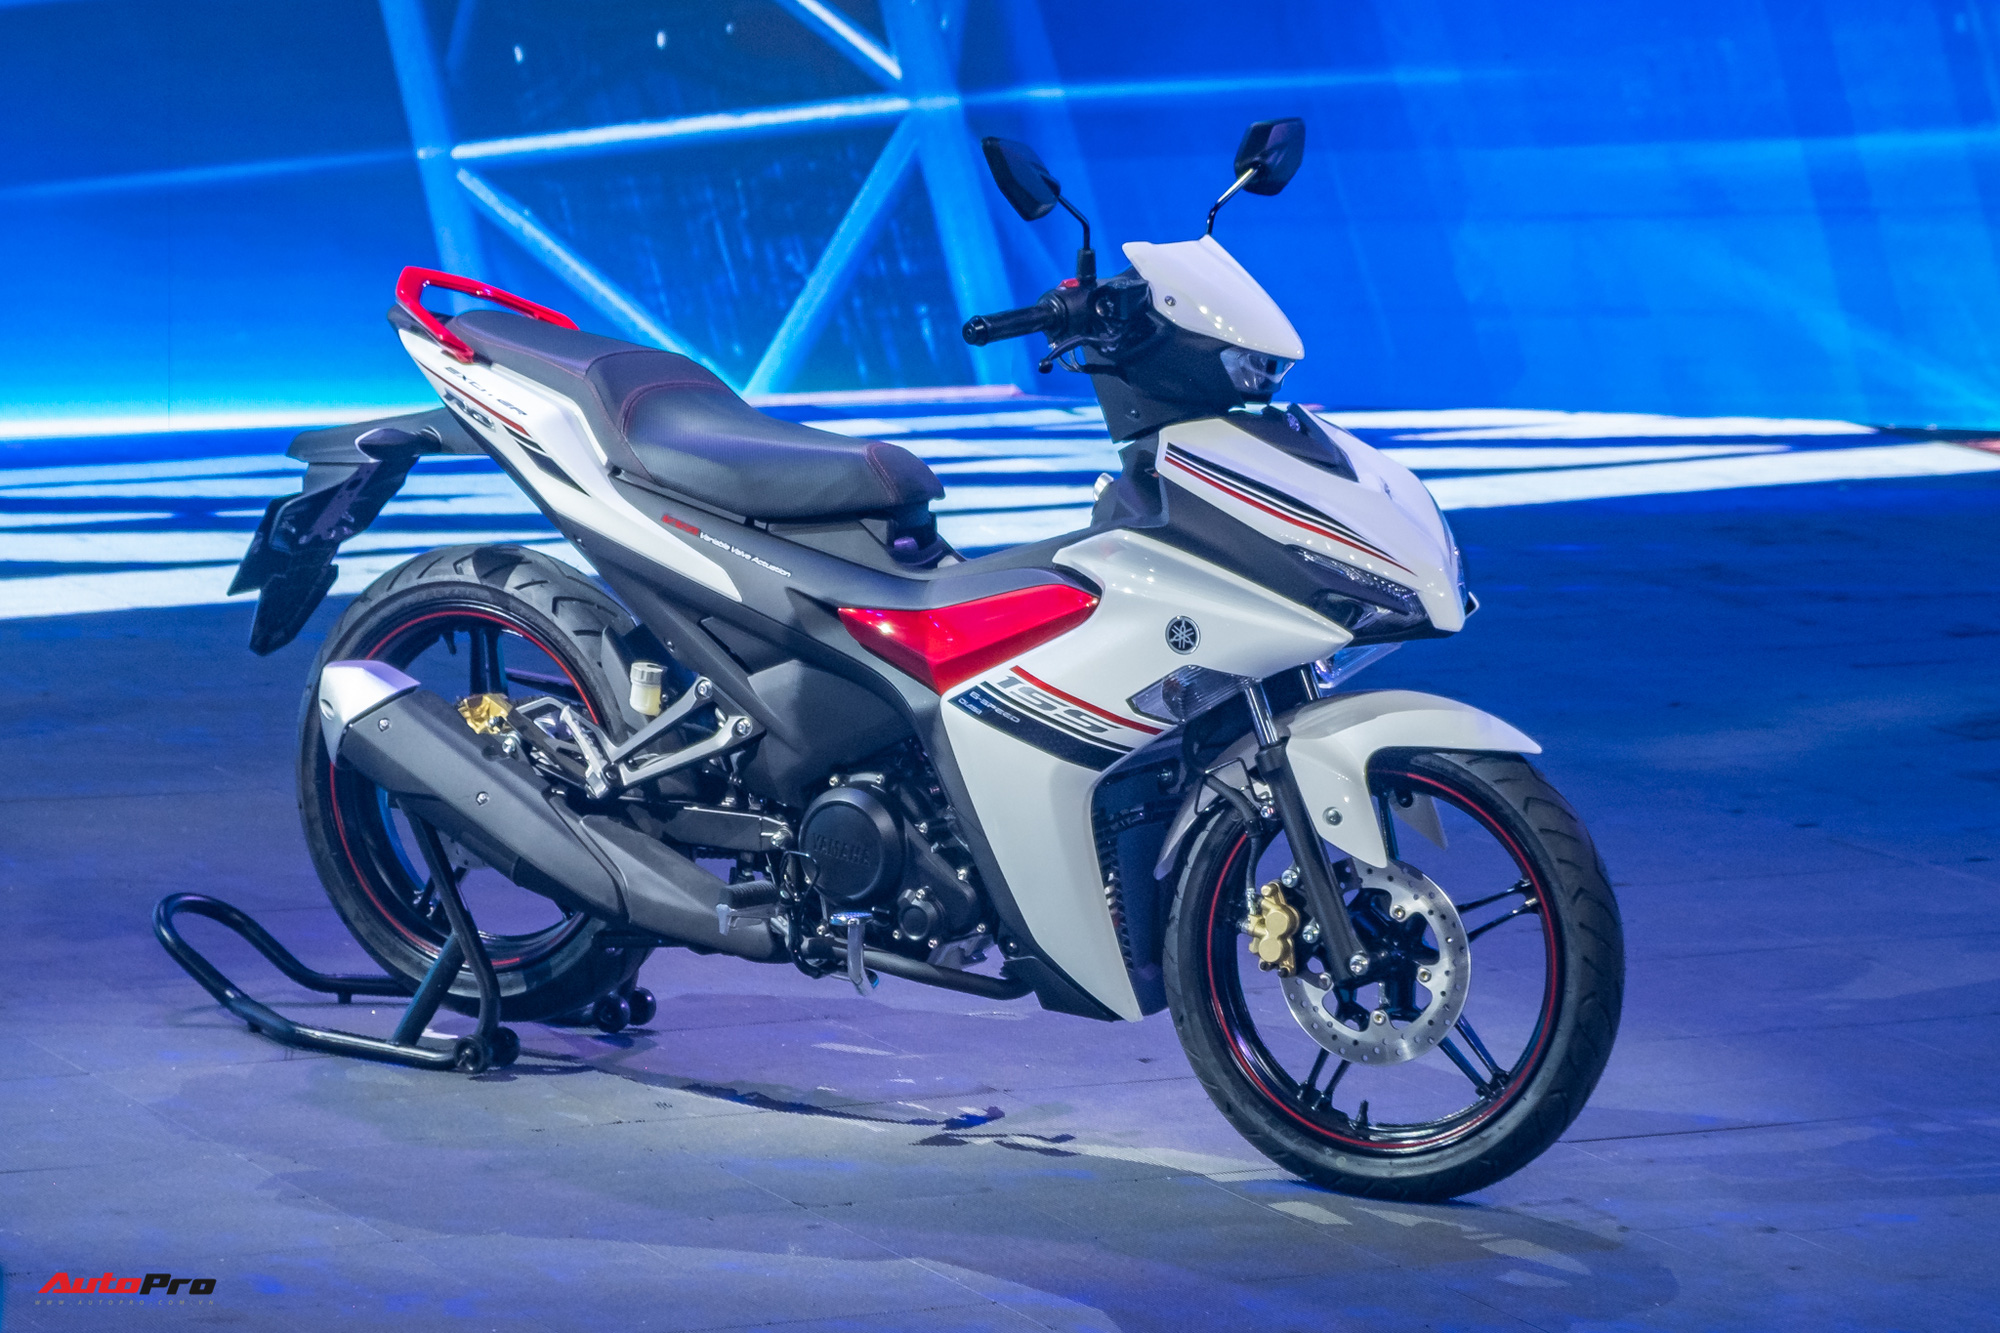 Yamaha Exciter 2021 gây sốt trên mạng xã hội: Đa số chê thiếu ABS và thiết kế không sáng tạo - Ảnh 3.